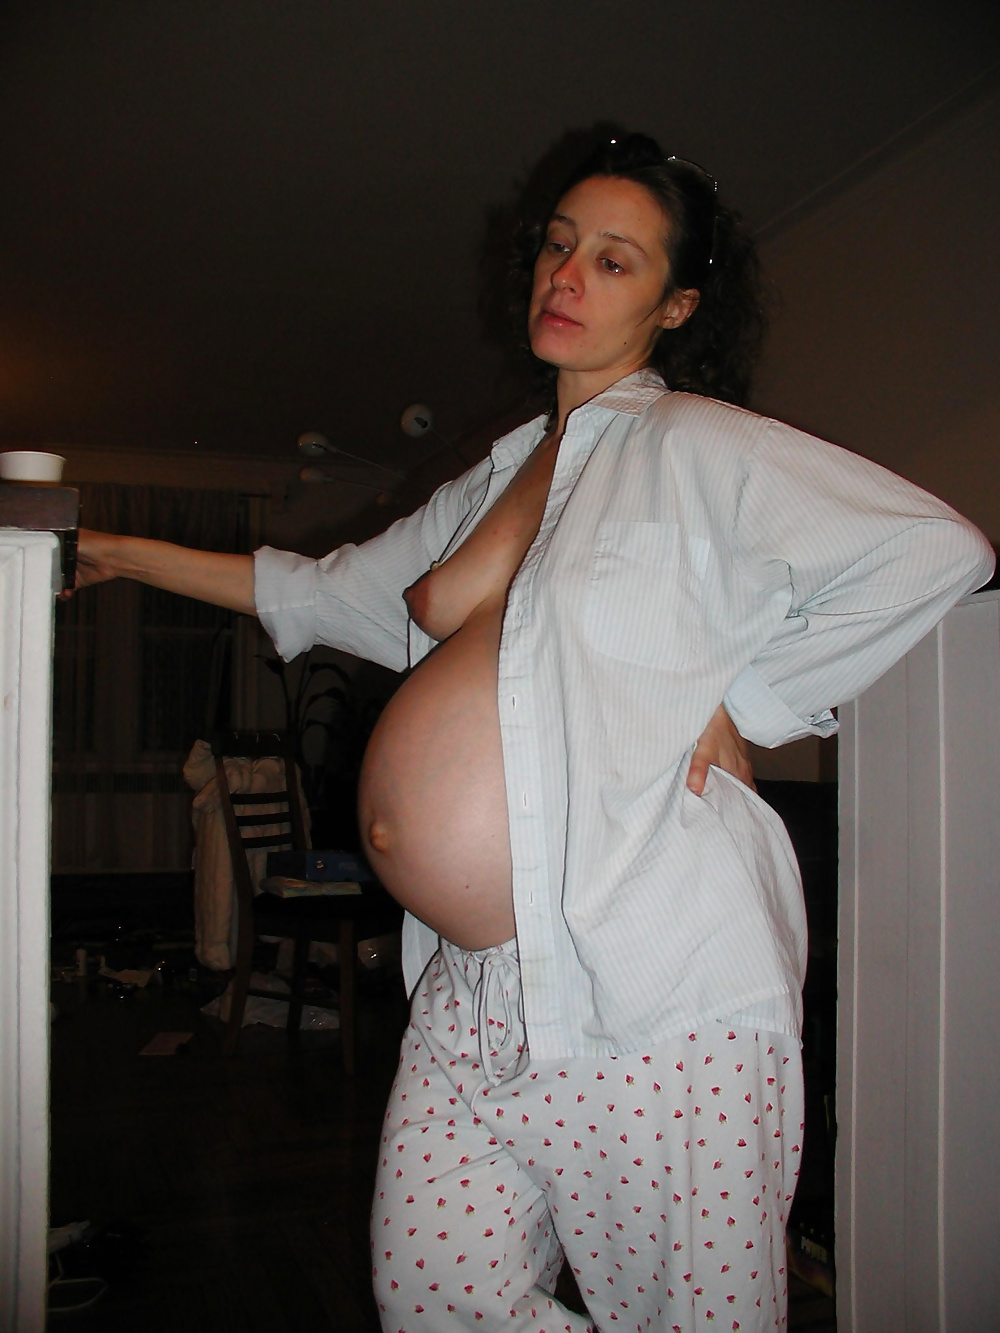 Coleccion privado amateur embarazada...si la conoces
 #29183338